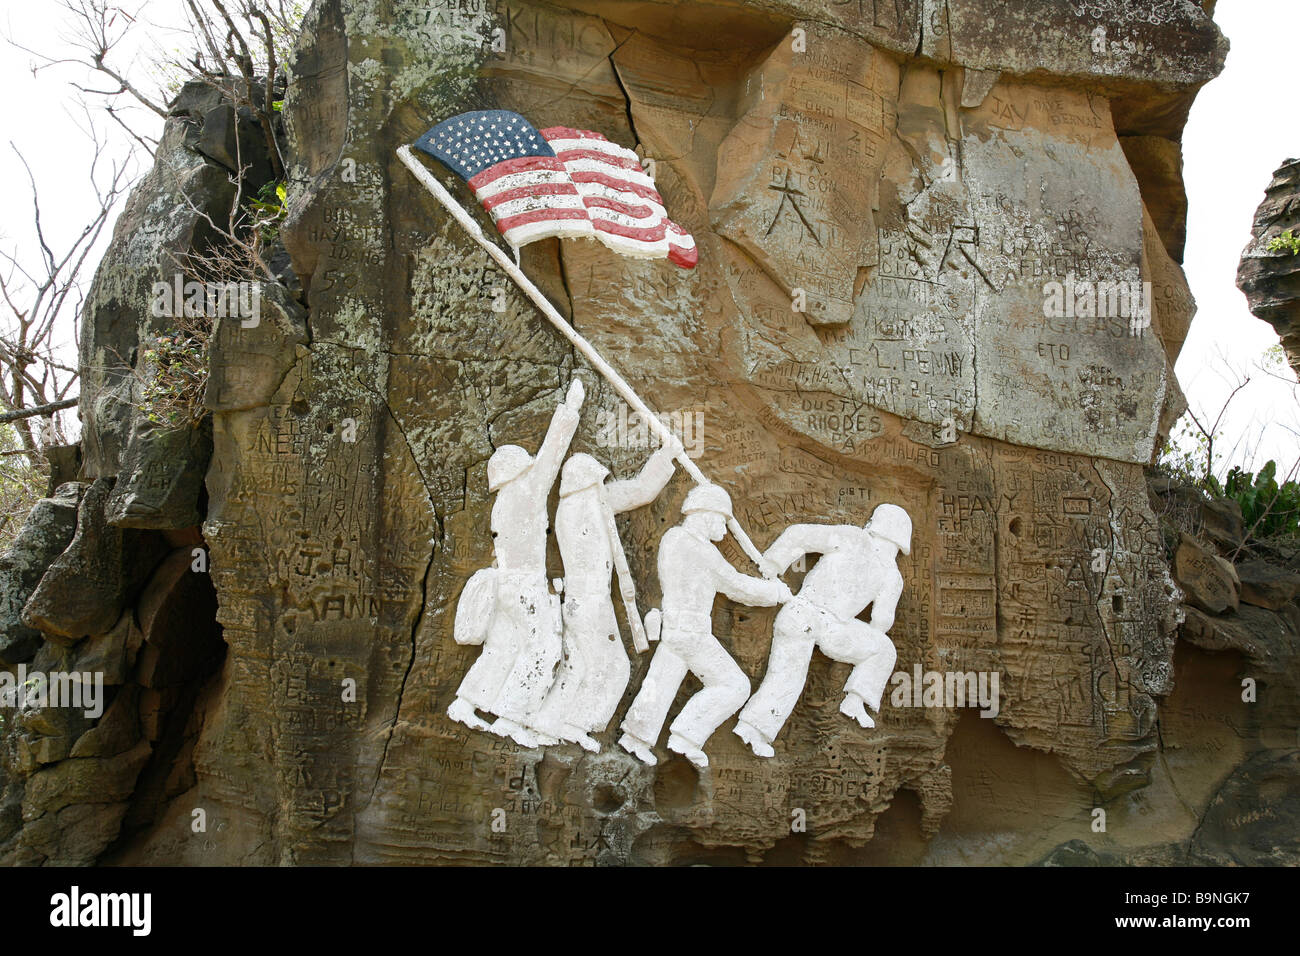 Réplique de la photographie de Joe Rosenthal, de la levée du drapeau sur Iwo Jima sculptée dans la roche sur Iwo Jima Banque D'Images